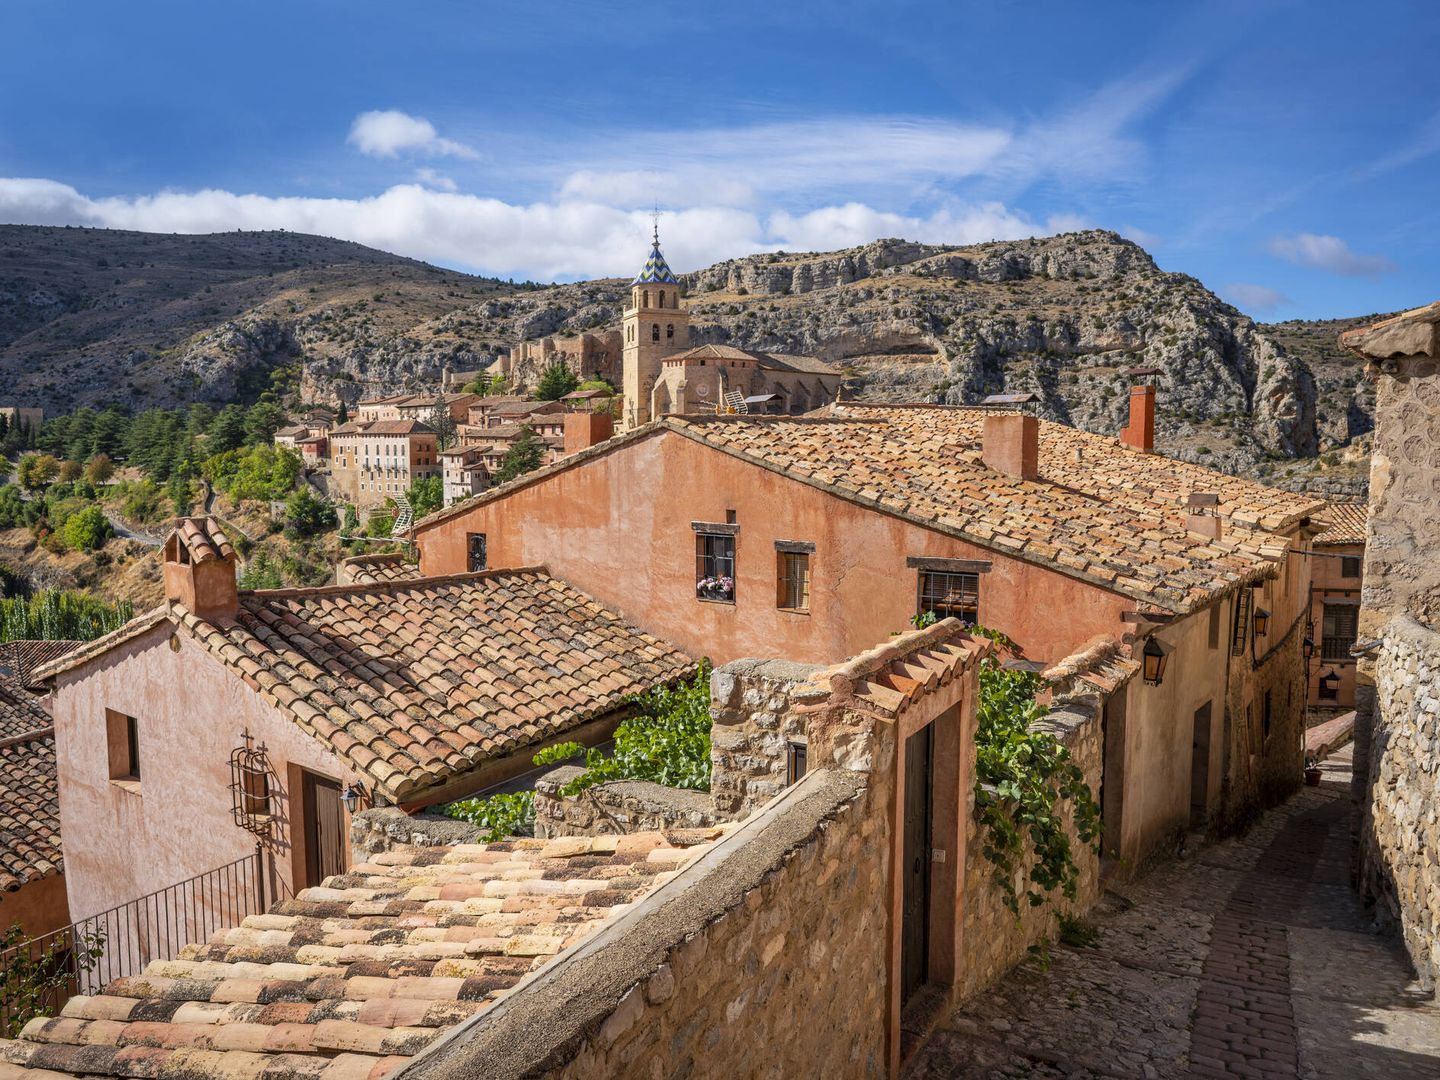 Calles del pueblo de Albarracín. (Cedido)